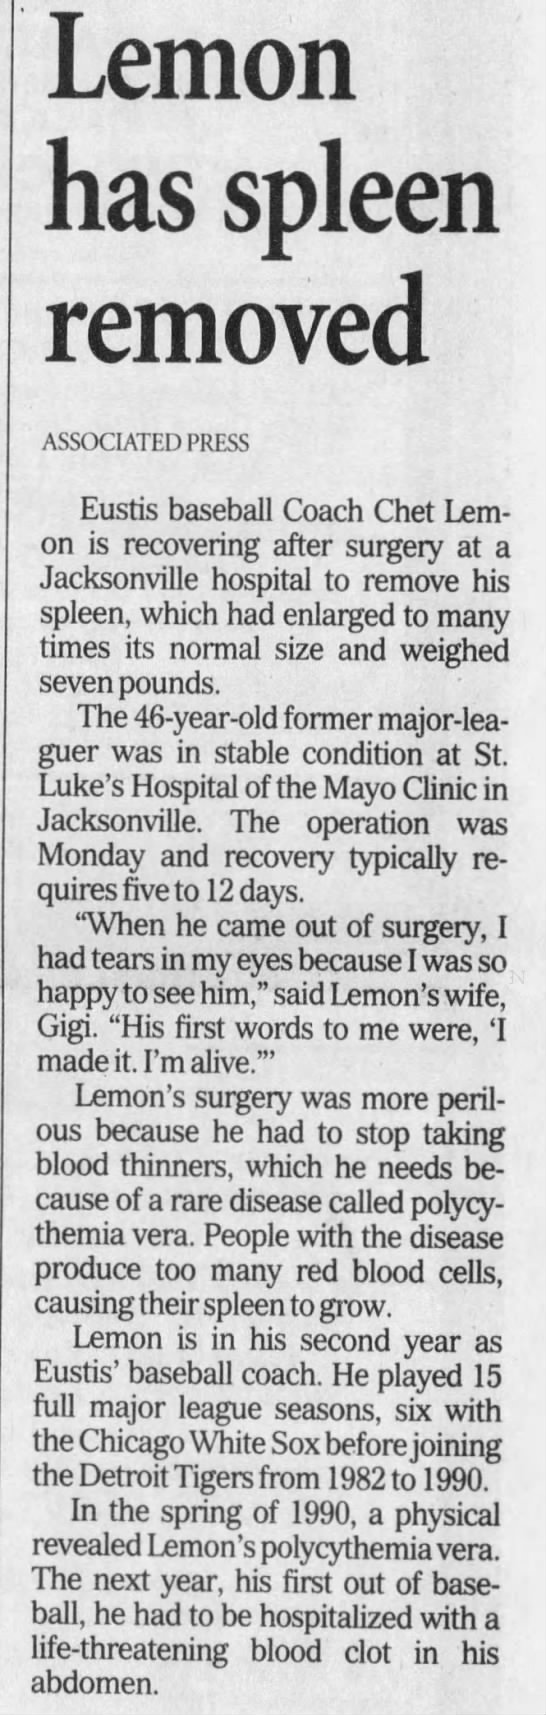 Lemon has spleen removed - 